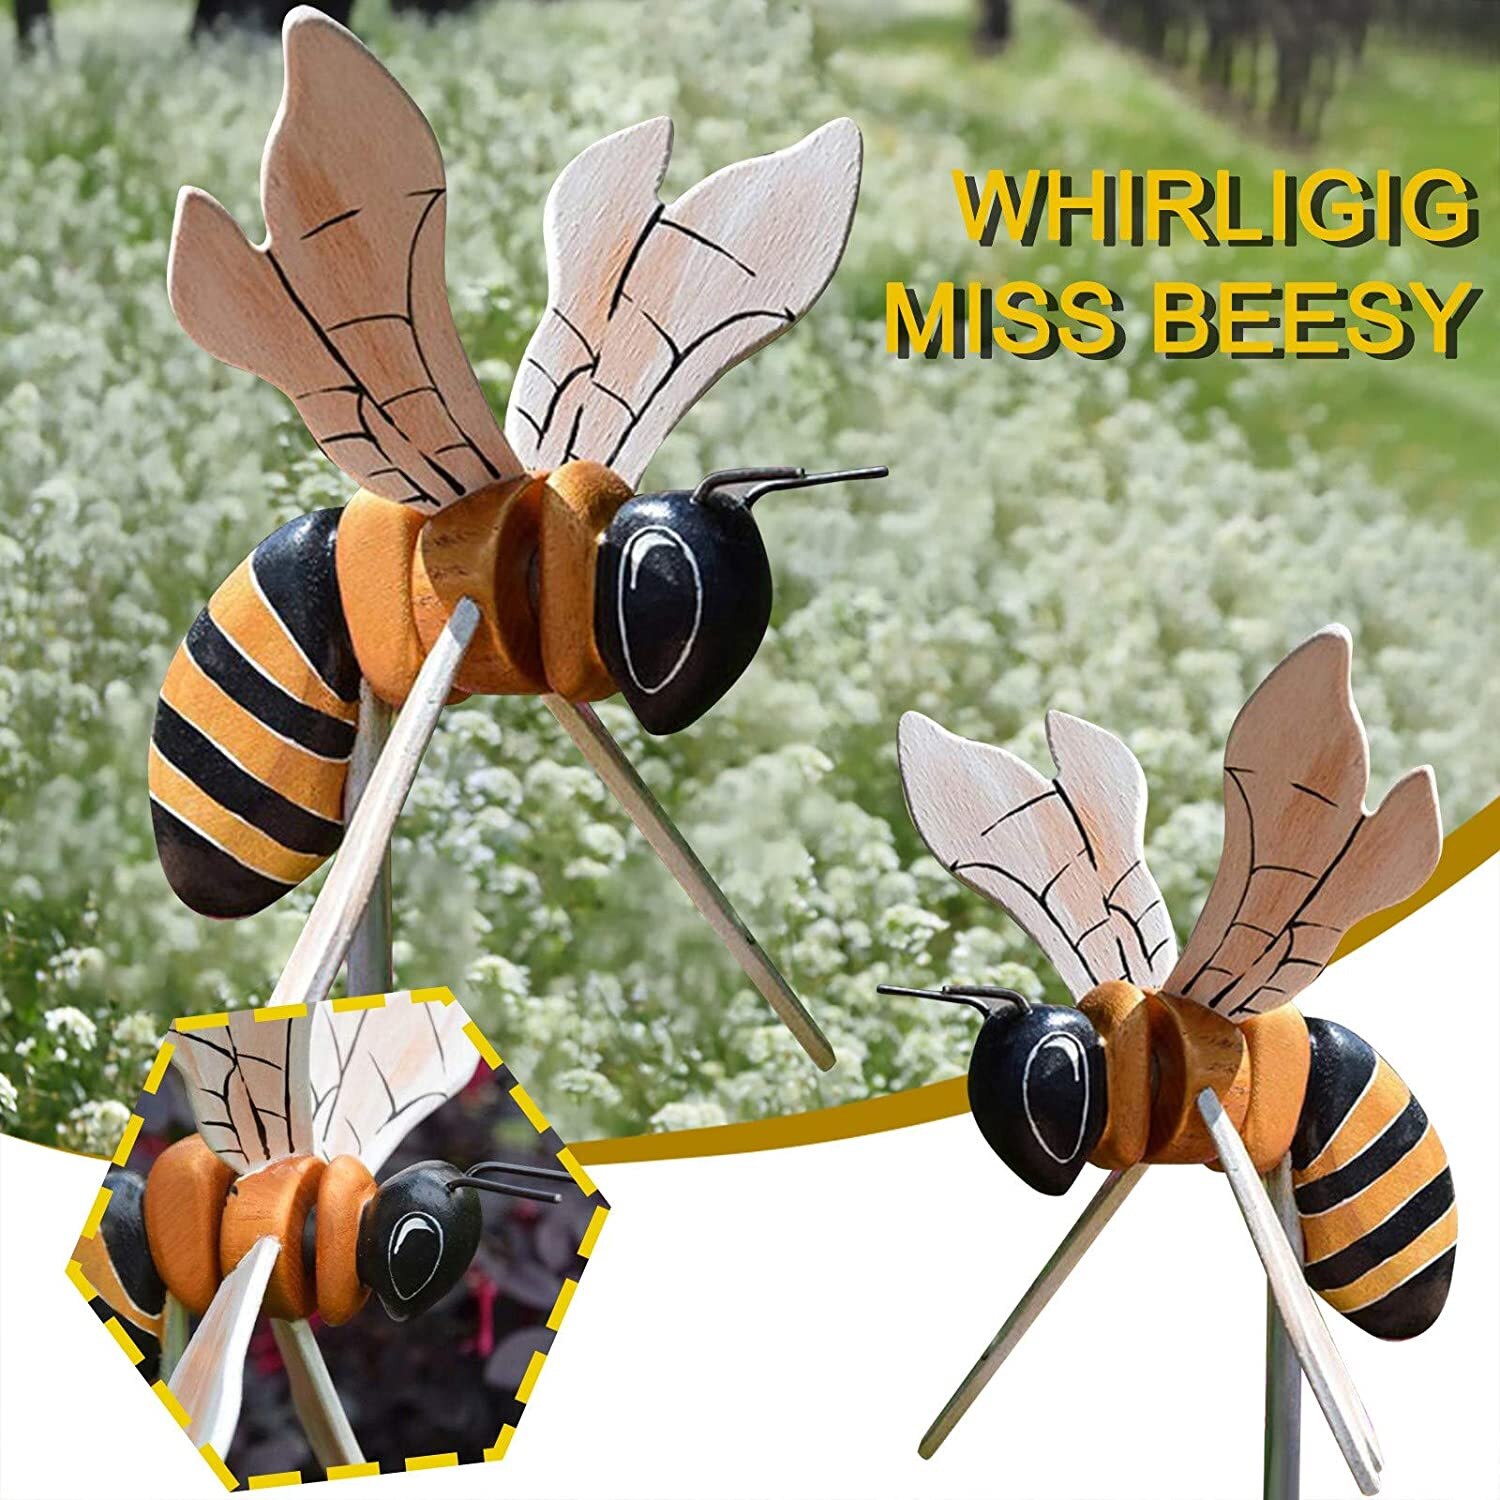 Bee Wind Tuin Wind Sculpturen Serie Whirly Outdoor Tuin Gazon Decor Bewegen Met De Wind Creatieve Versiering Tuin Decoratieve